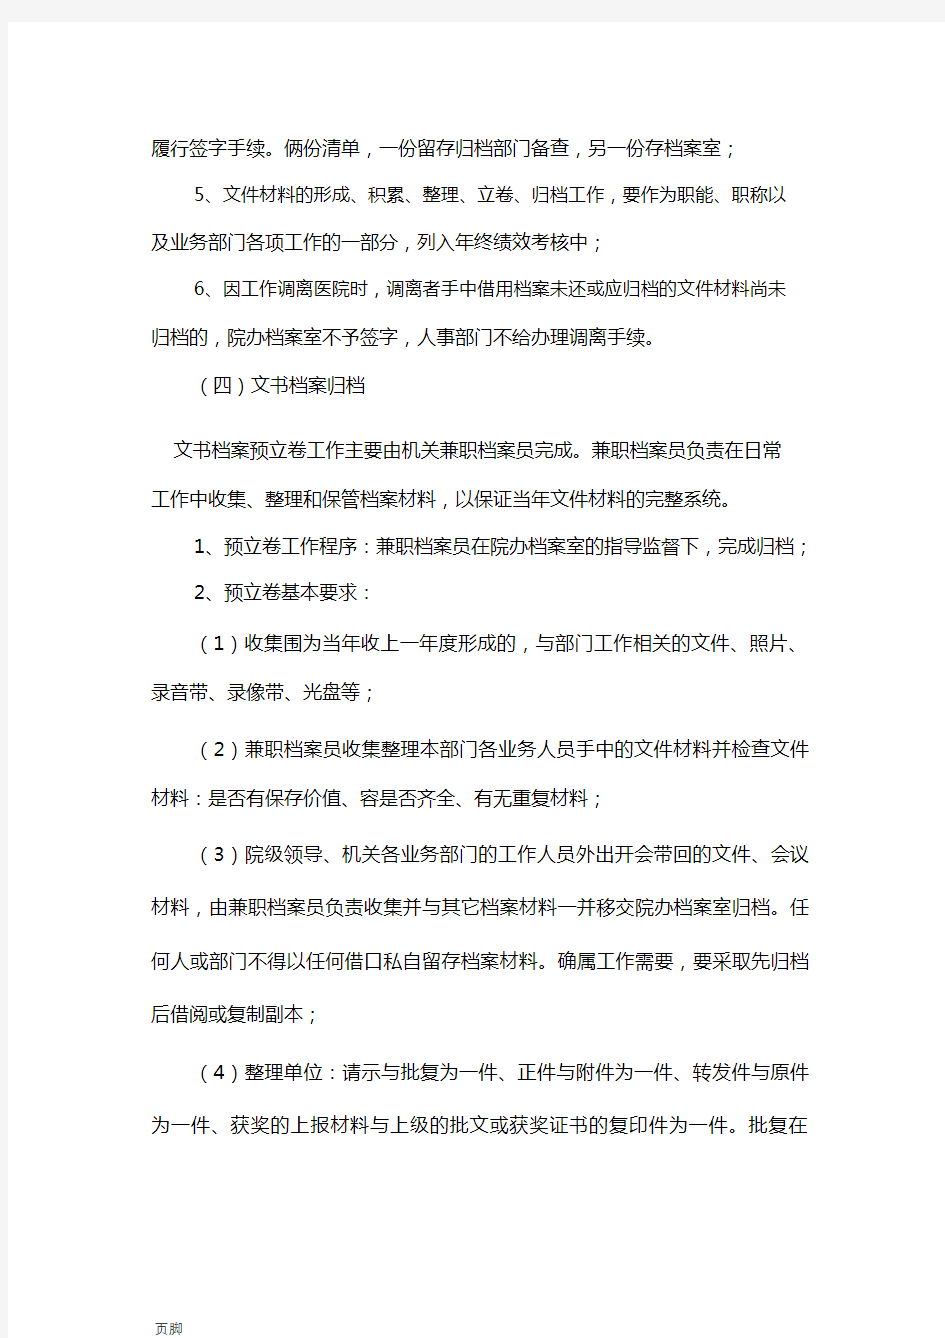 3.北京协和医院档案管理系统规章制度